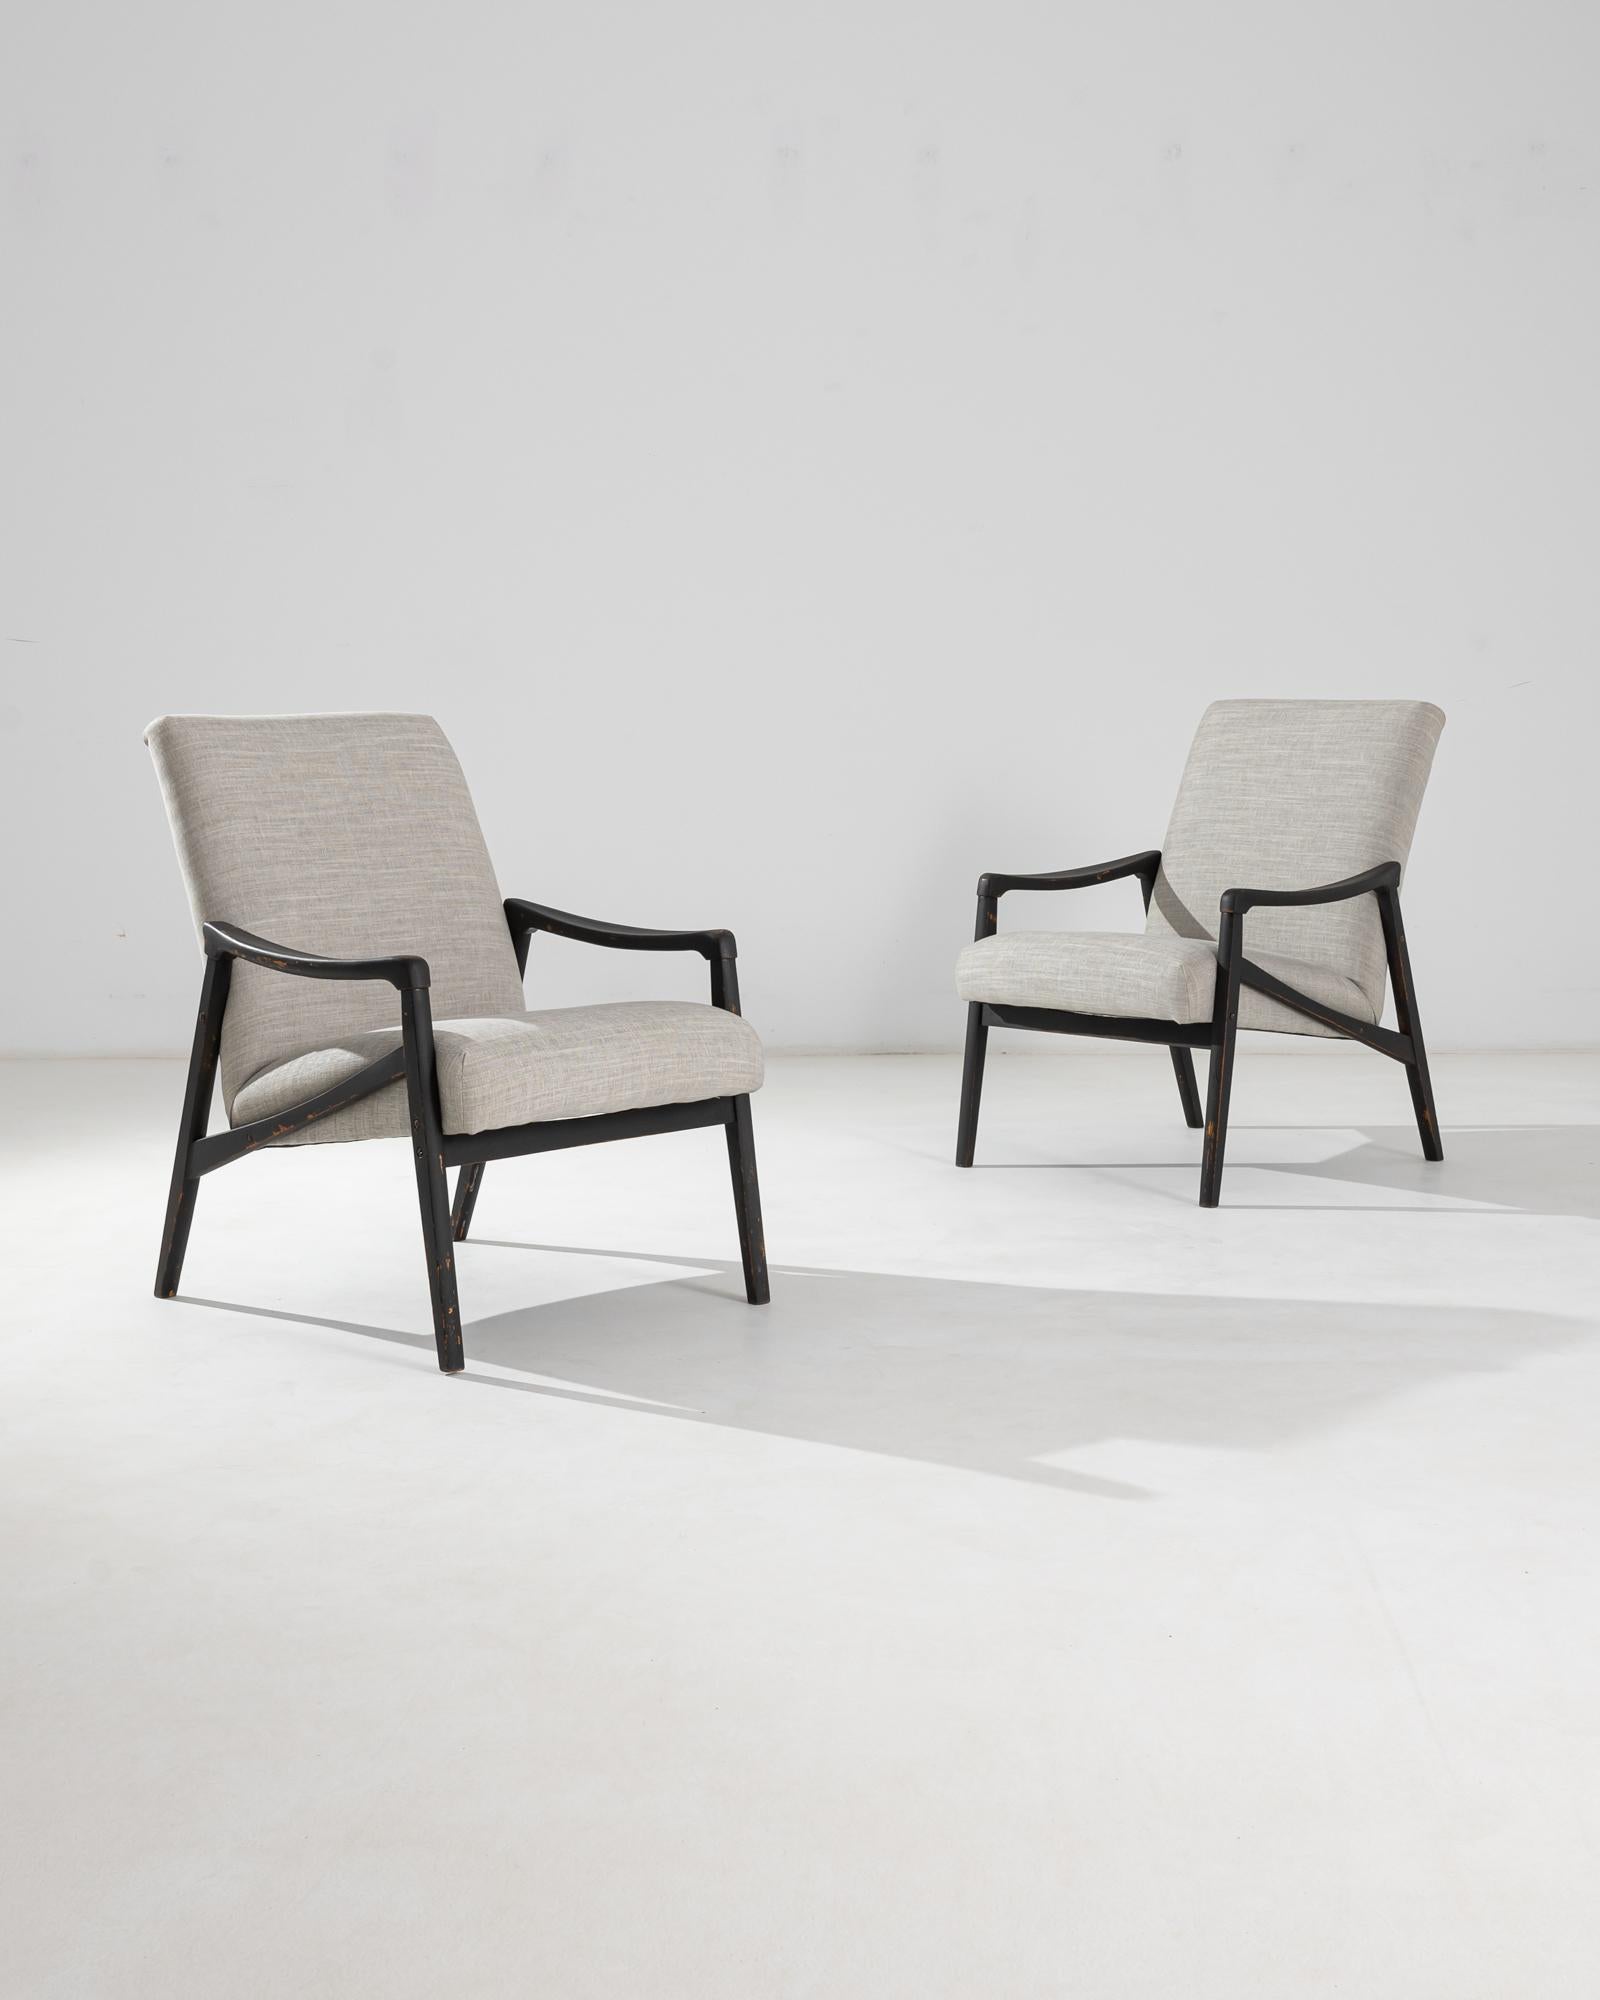 Paire de fauteuils produits dans l'ancienne Tchécoslovaquie, dont le design est attribué à Jiri Jiroutek. Ce modèle des années 1960 a été retapissé dans un revêtement gris bruyère actualisé ; le ton neutre a été choisi pour compléter la patine polie